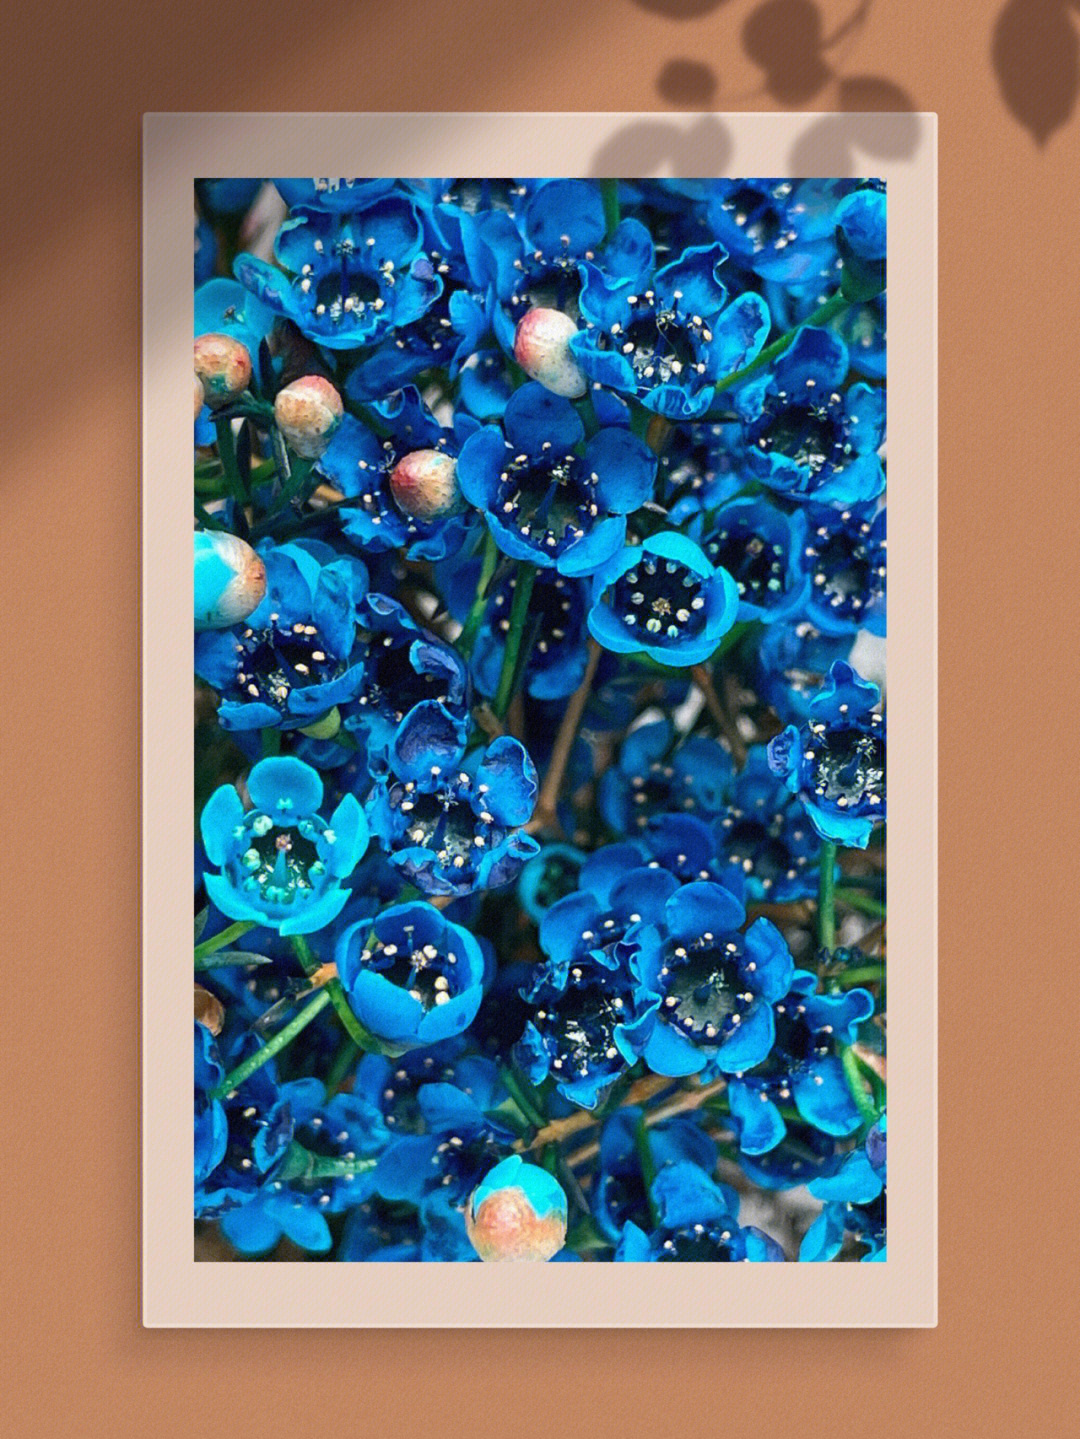 蓝澳梅,就是蓝色的梅花,主要来自澳洲